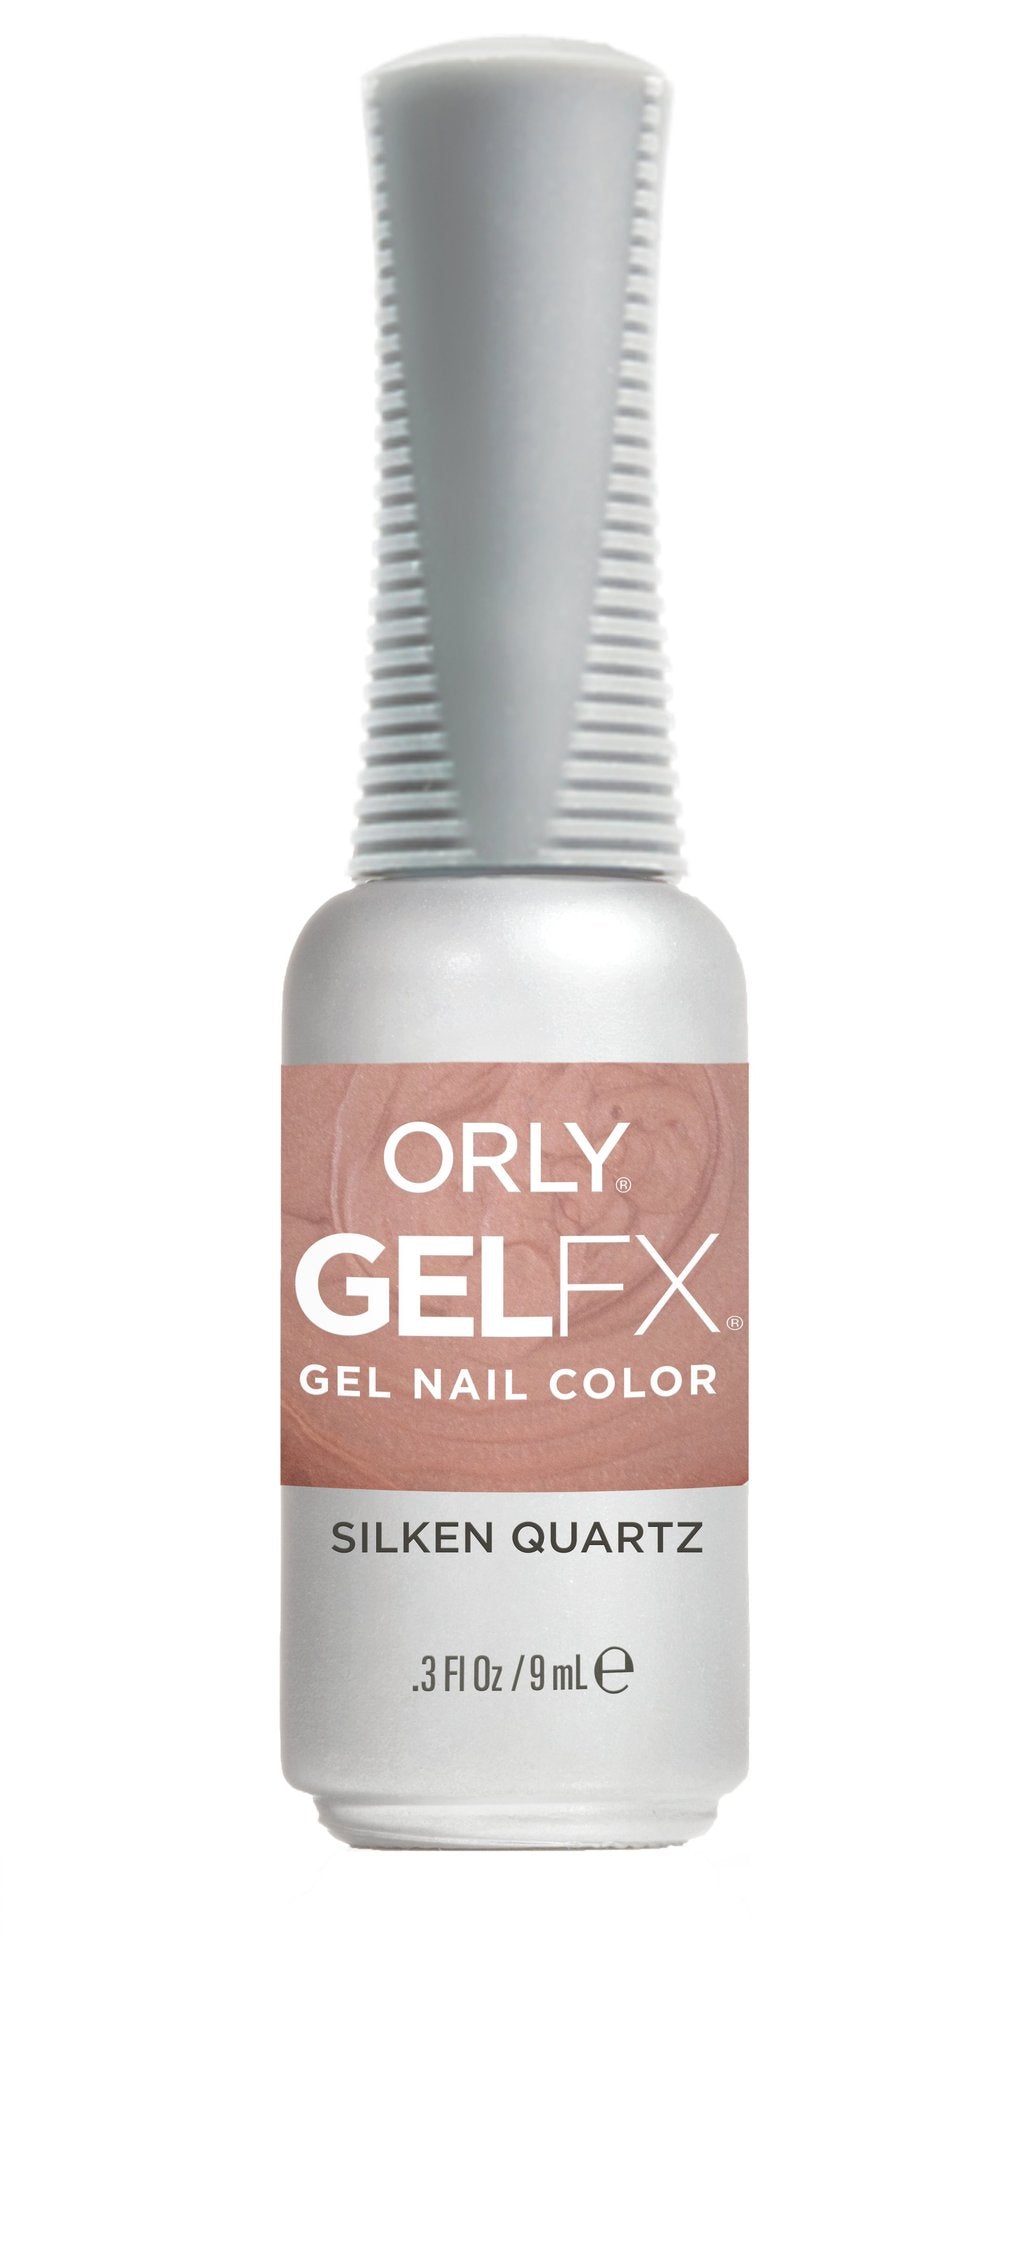 Orly GelFX Silken Quartz .3 fl oz 30934